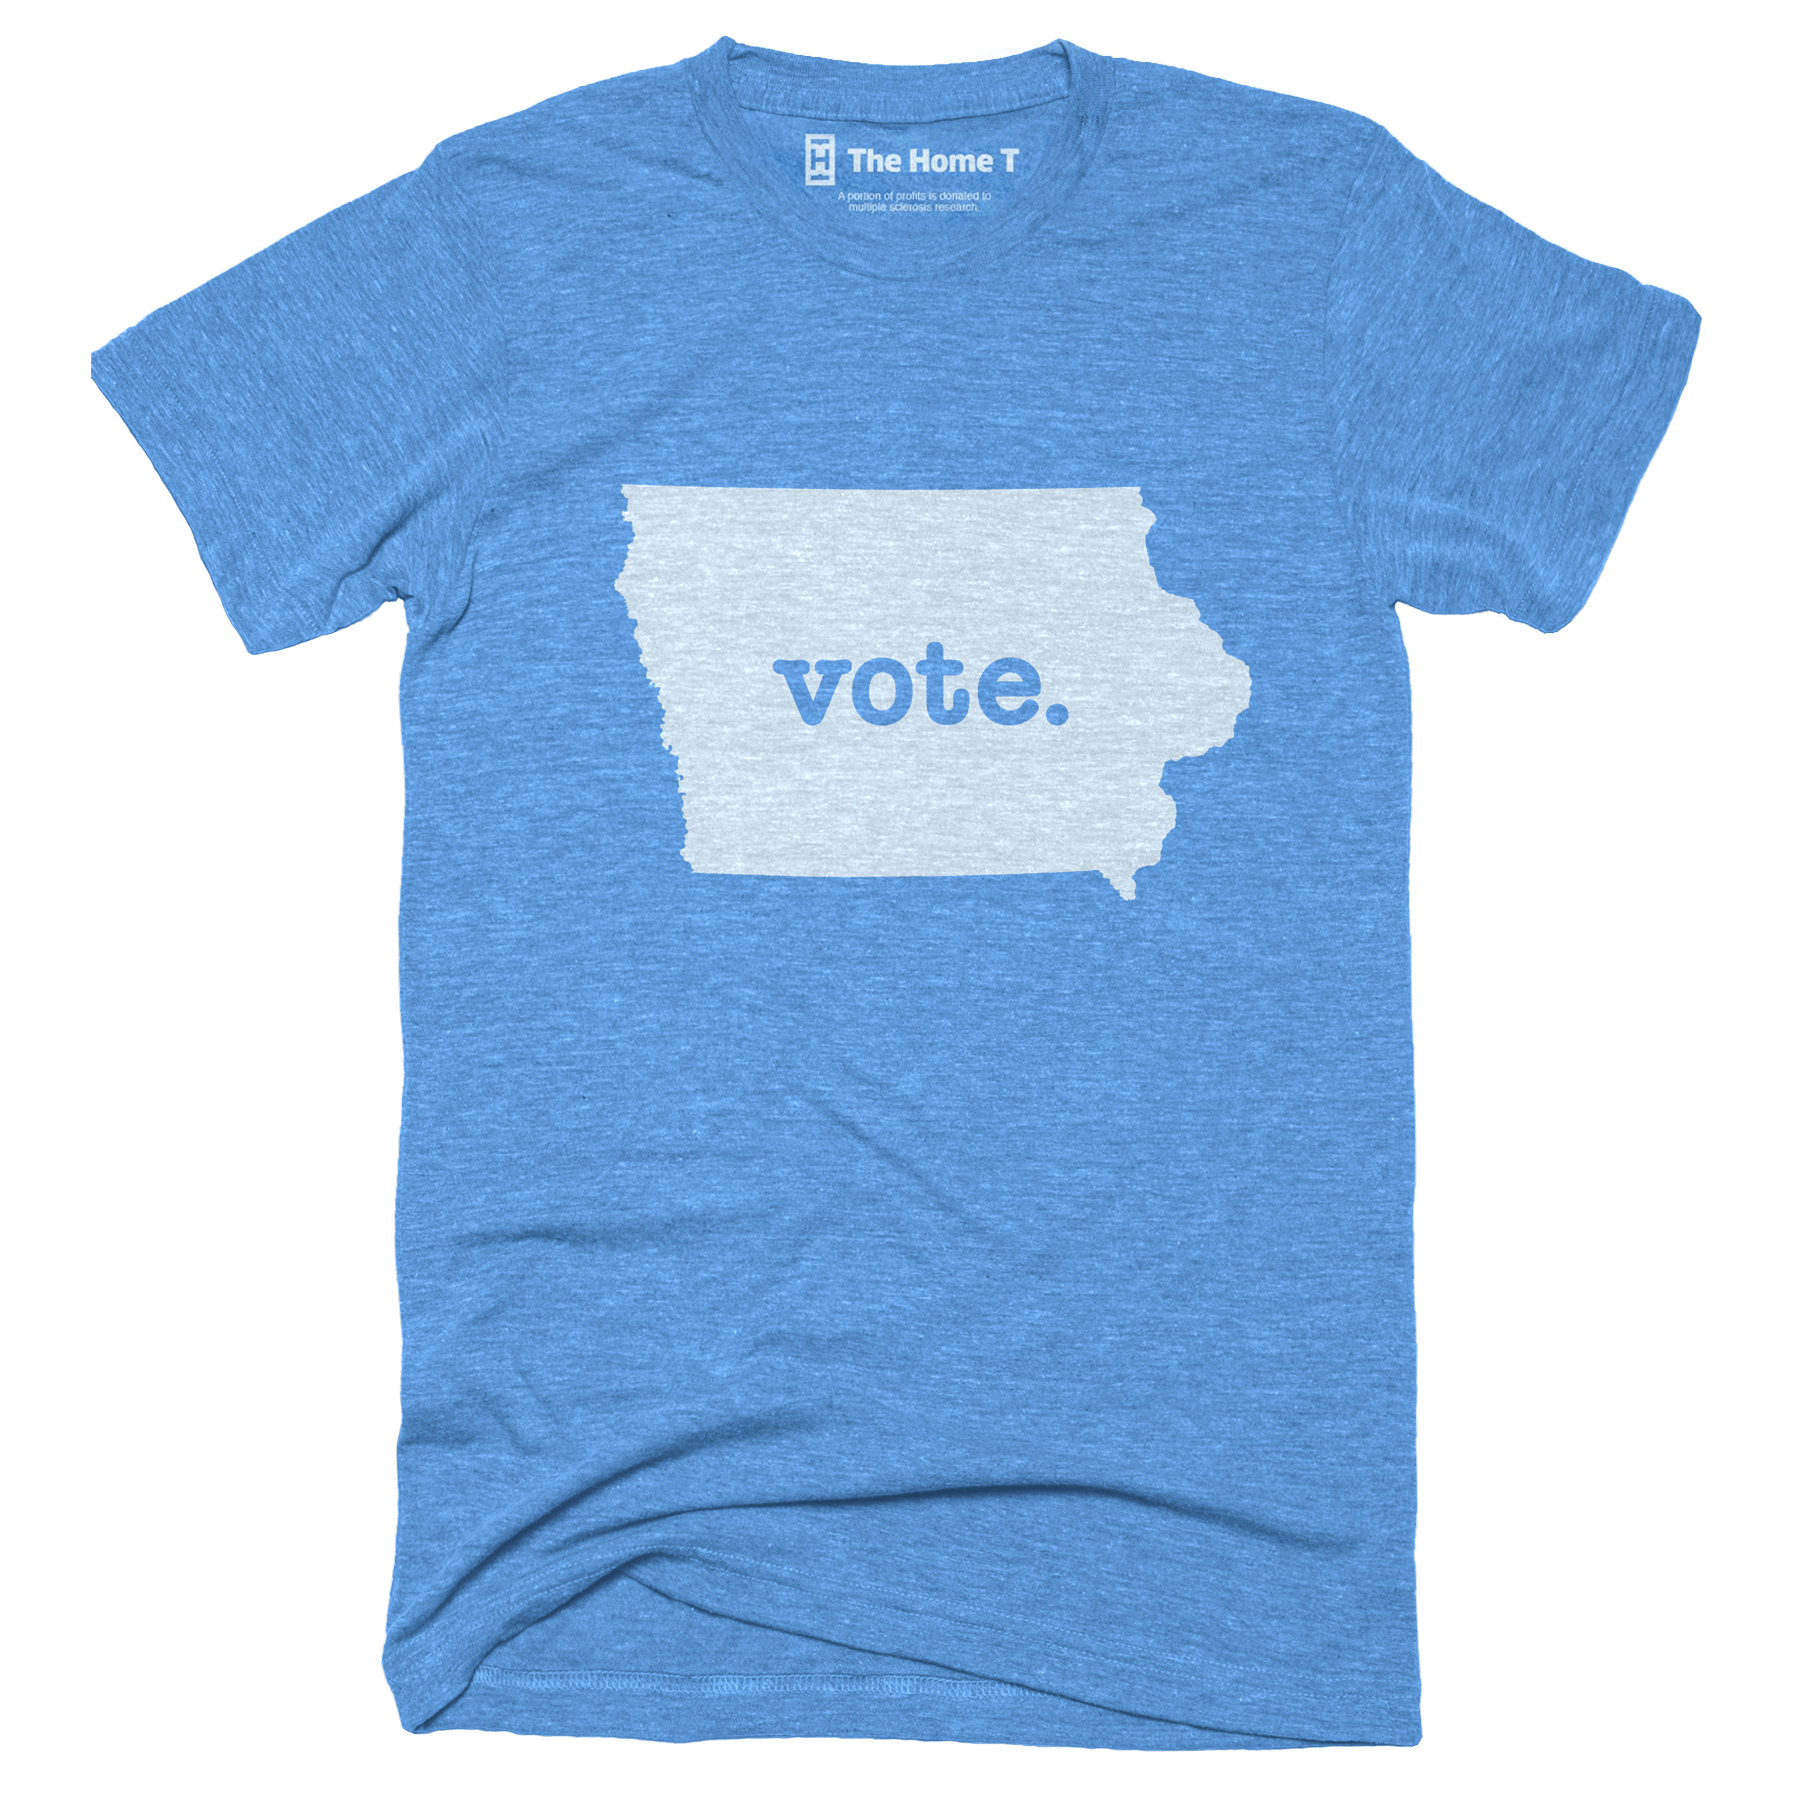 Iowa Vote Home T Vote The Home T XS Blue